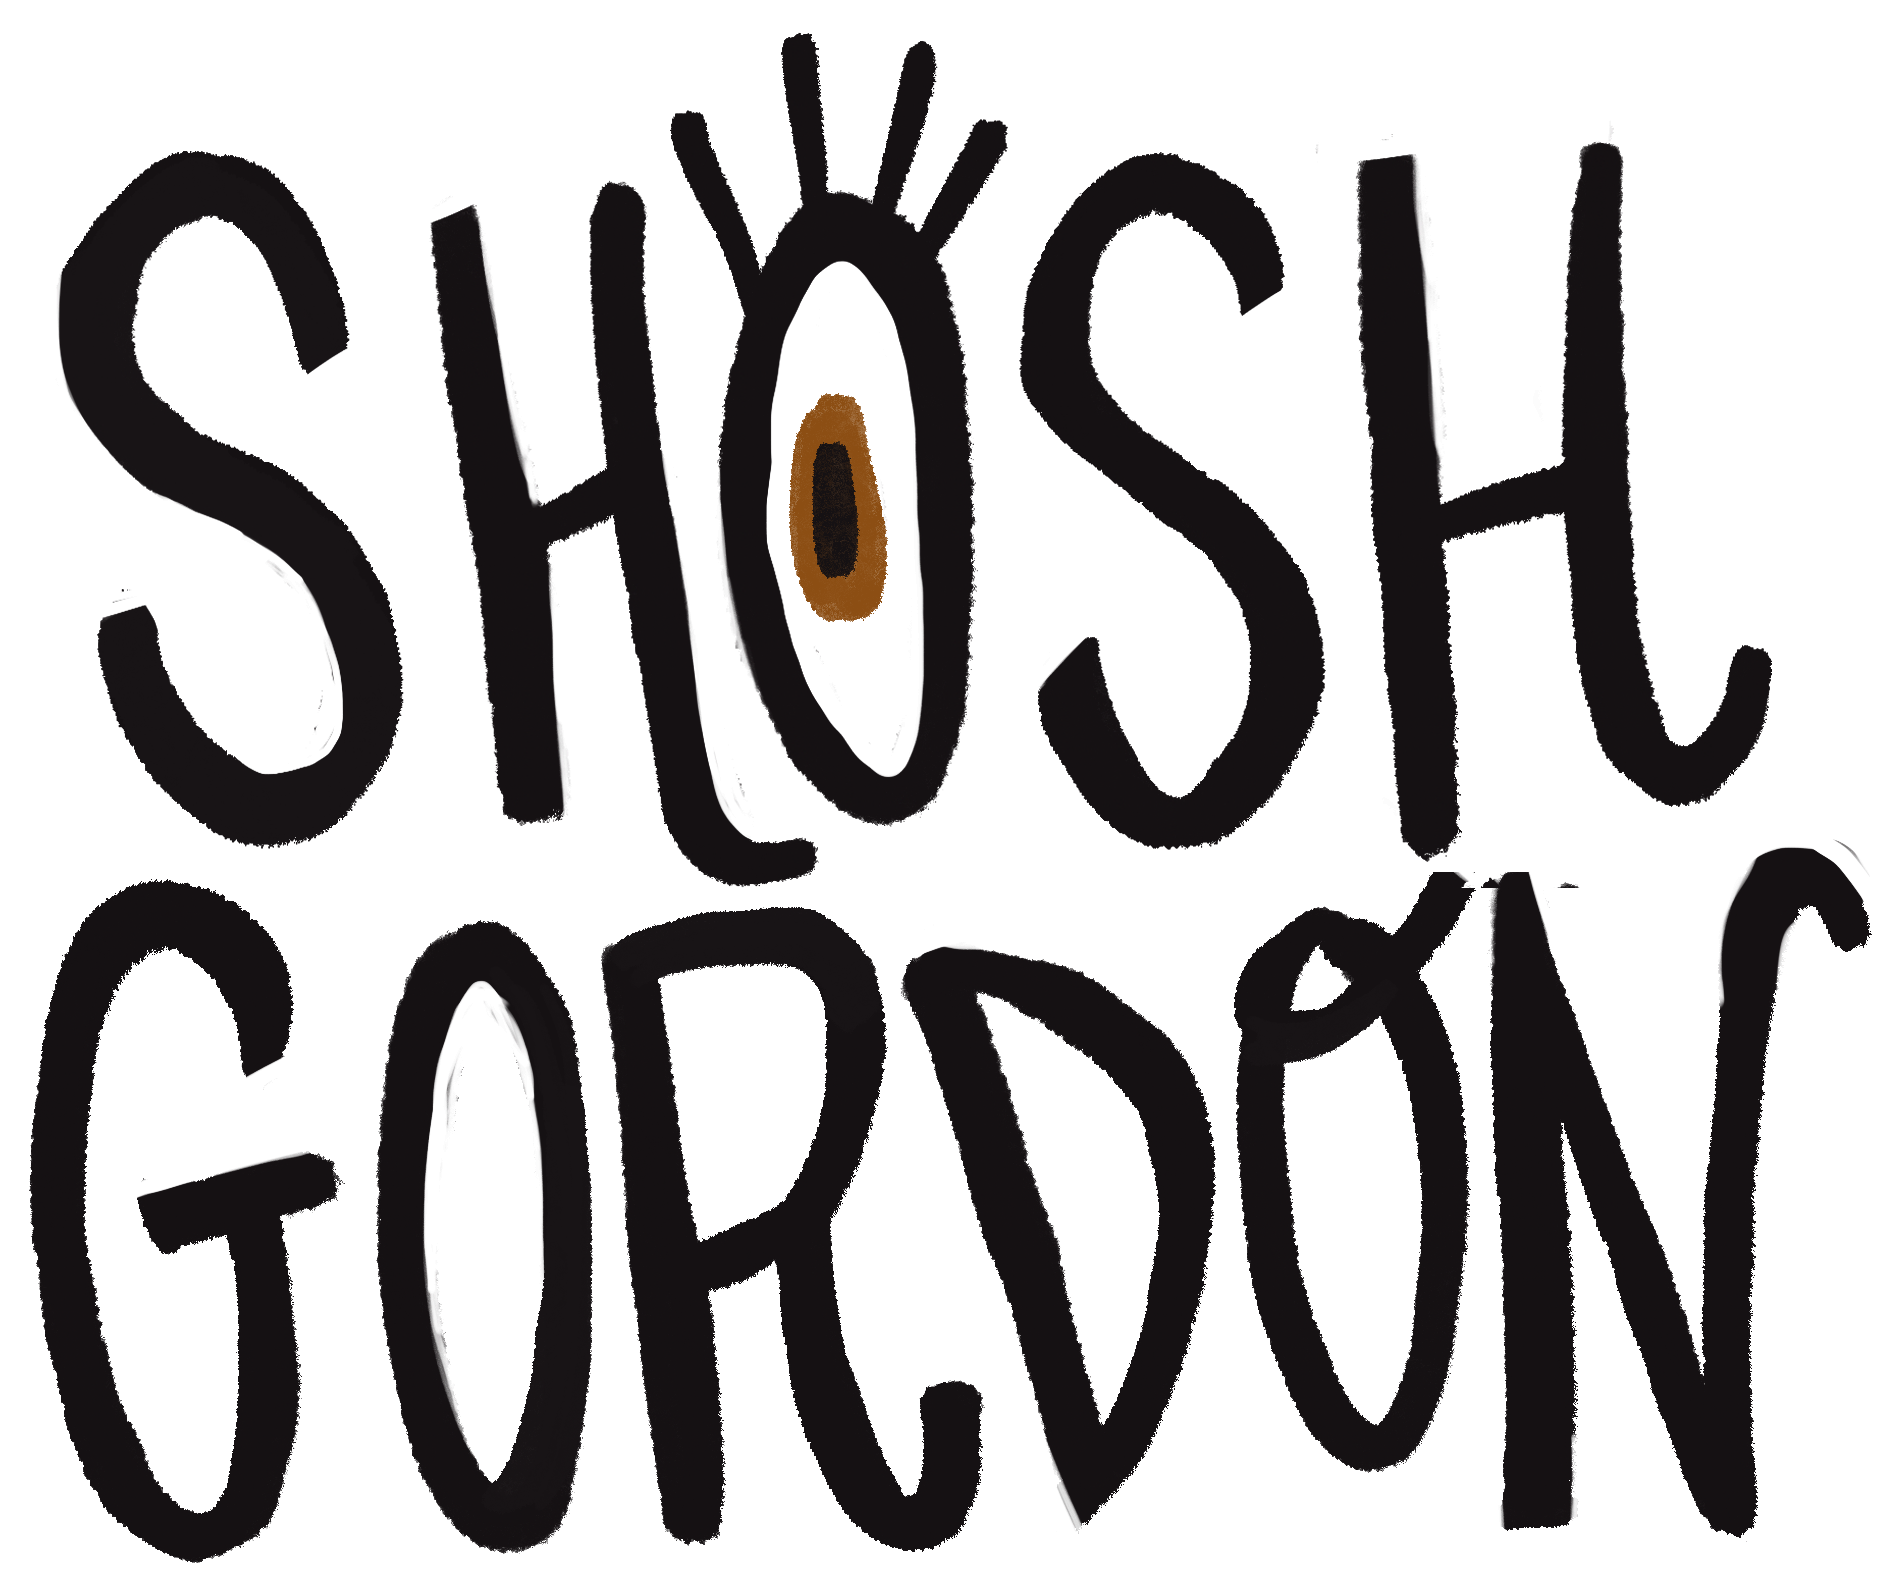 Shoshana Gordon